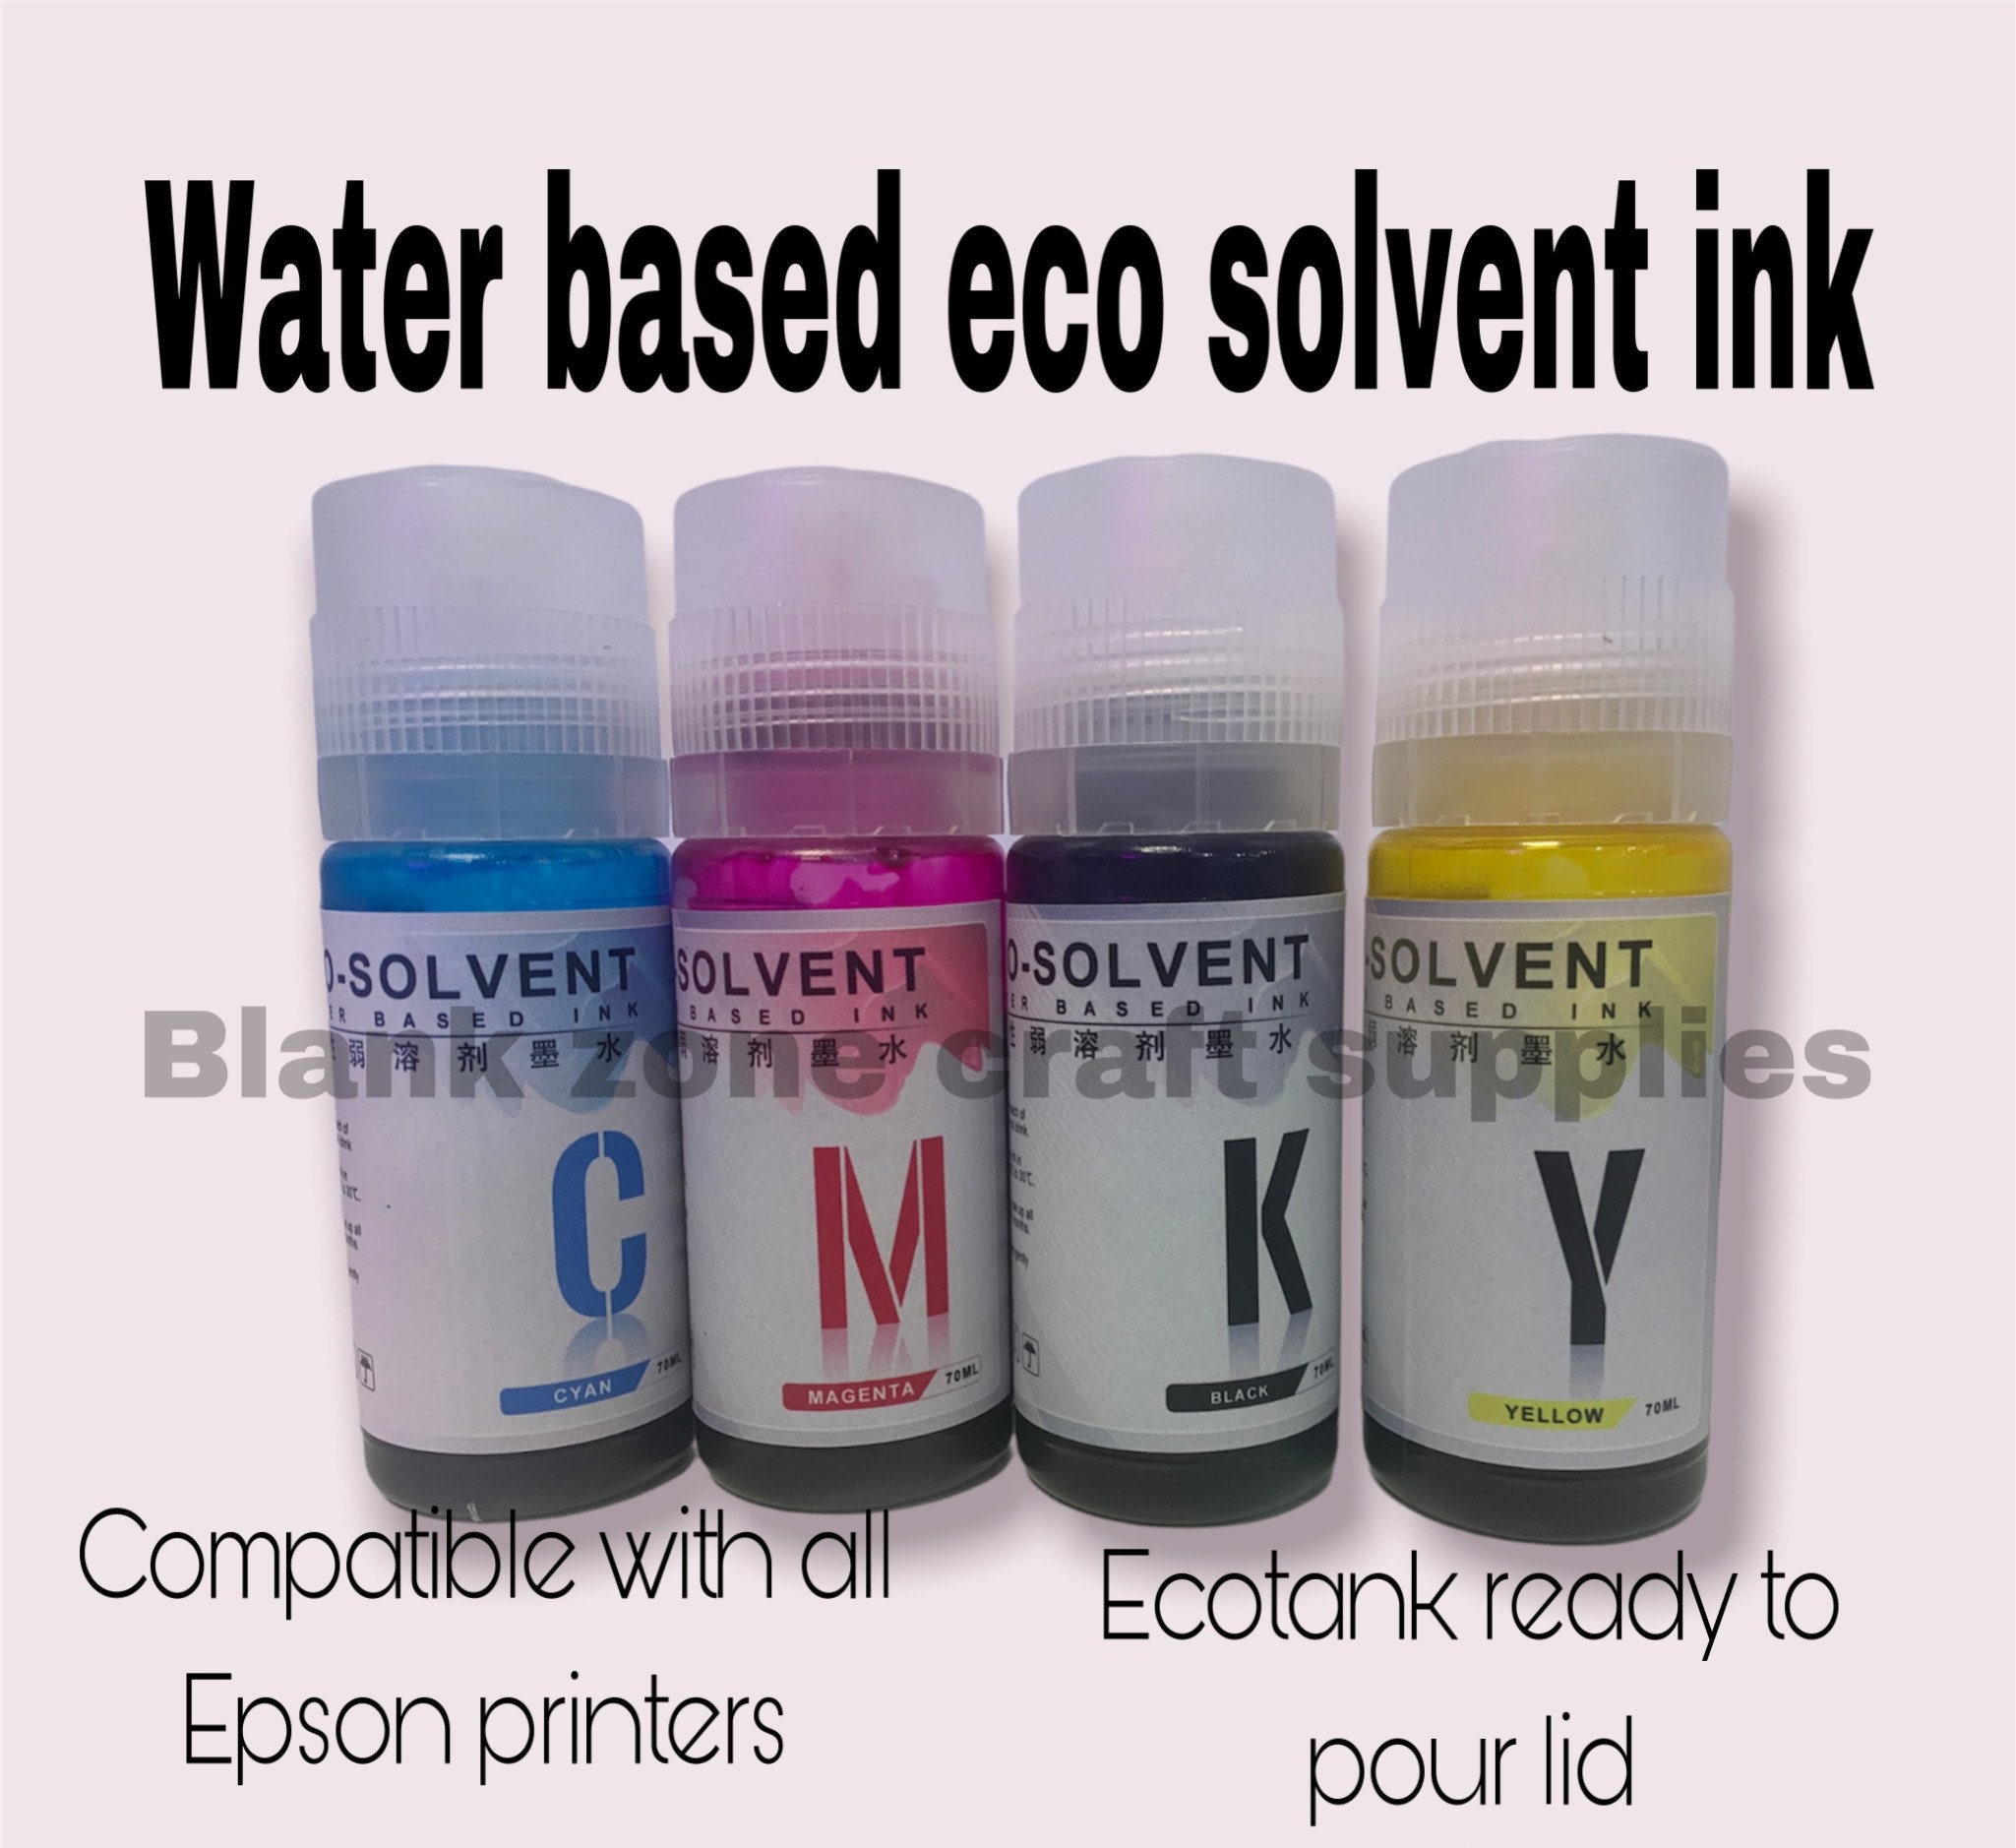 Replacement Ink Pad, Ink Cartridge, Trodat Refill Ink, Trodat Stamp Ink,  Replacment Ink Cartridge, Extra ink pad, Self ink stamp ink